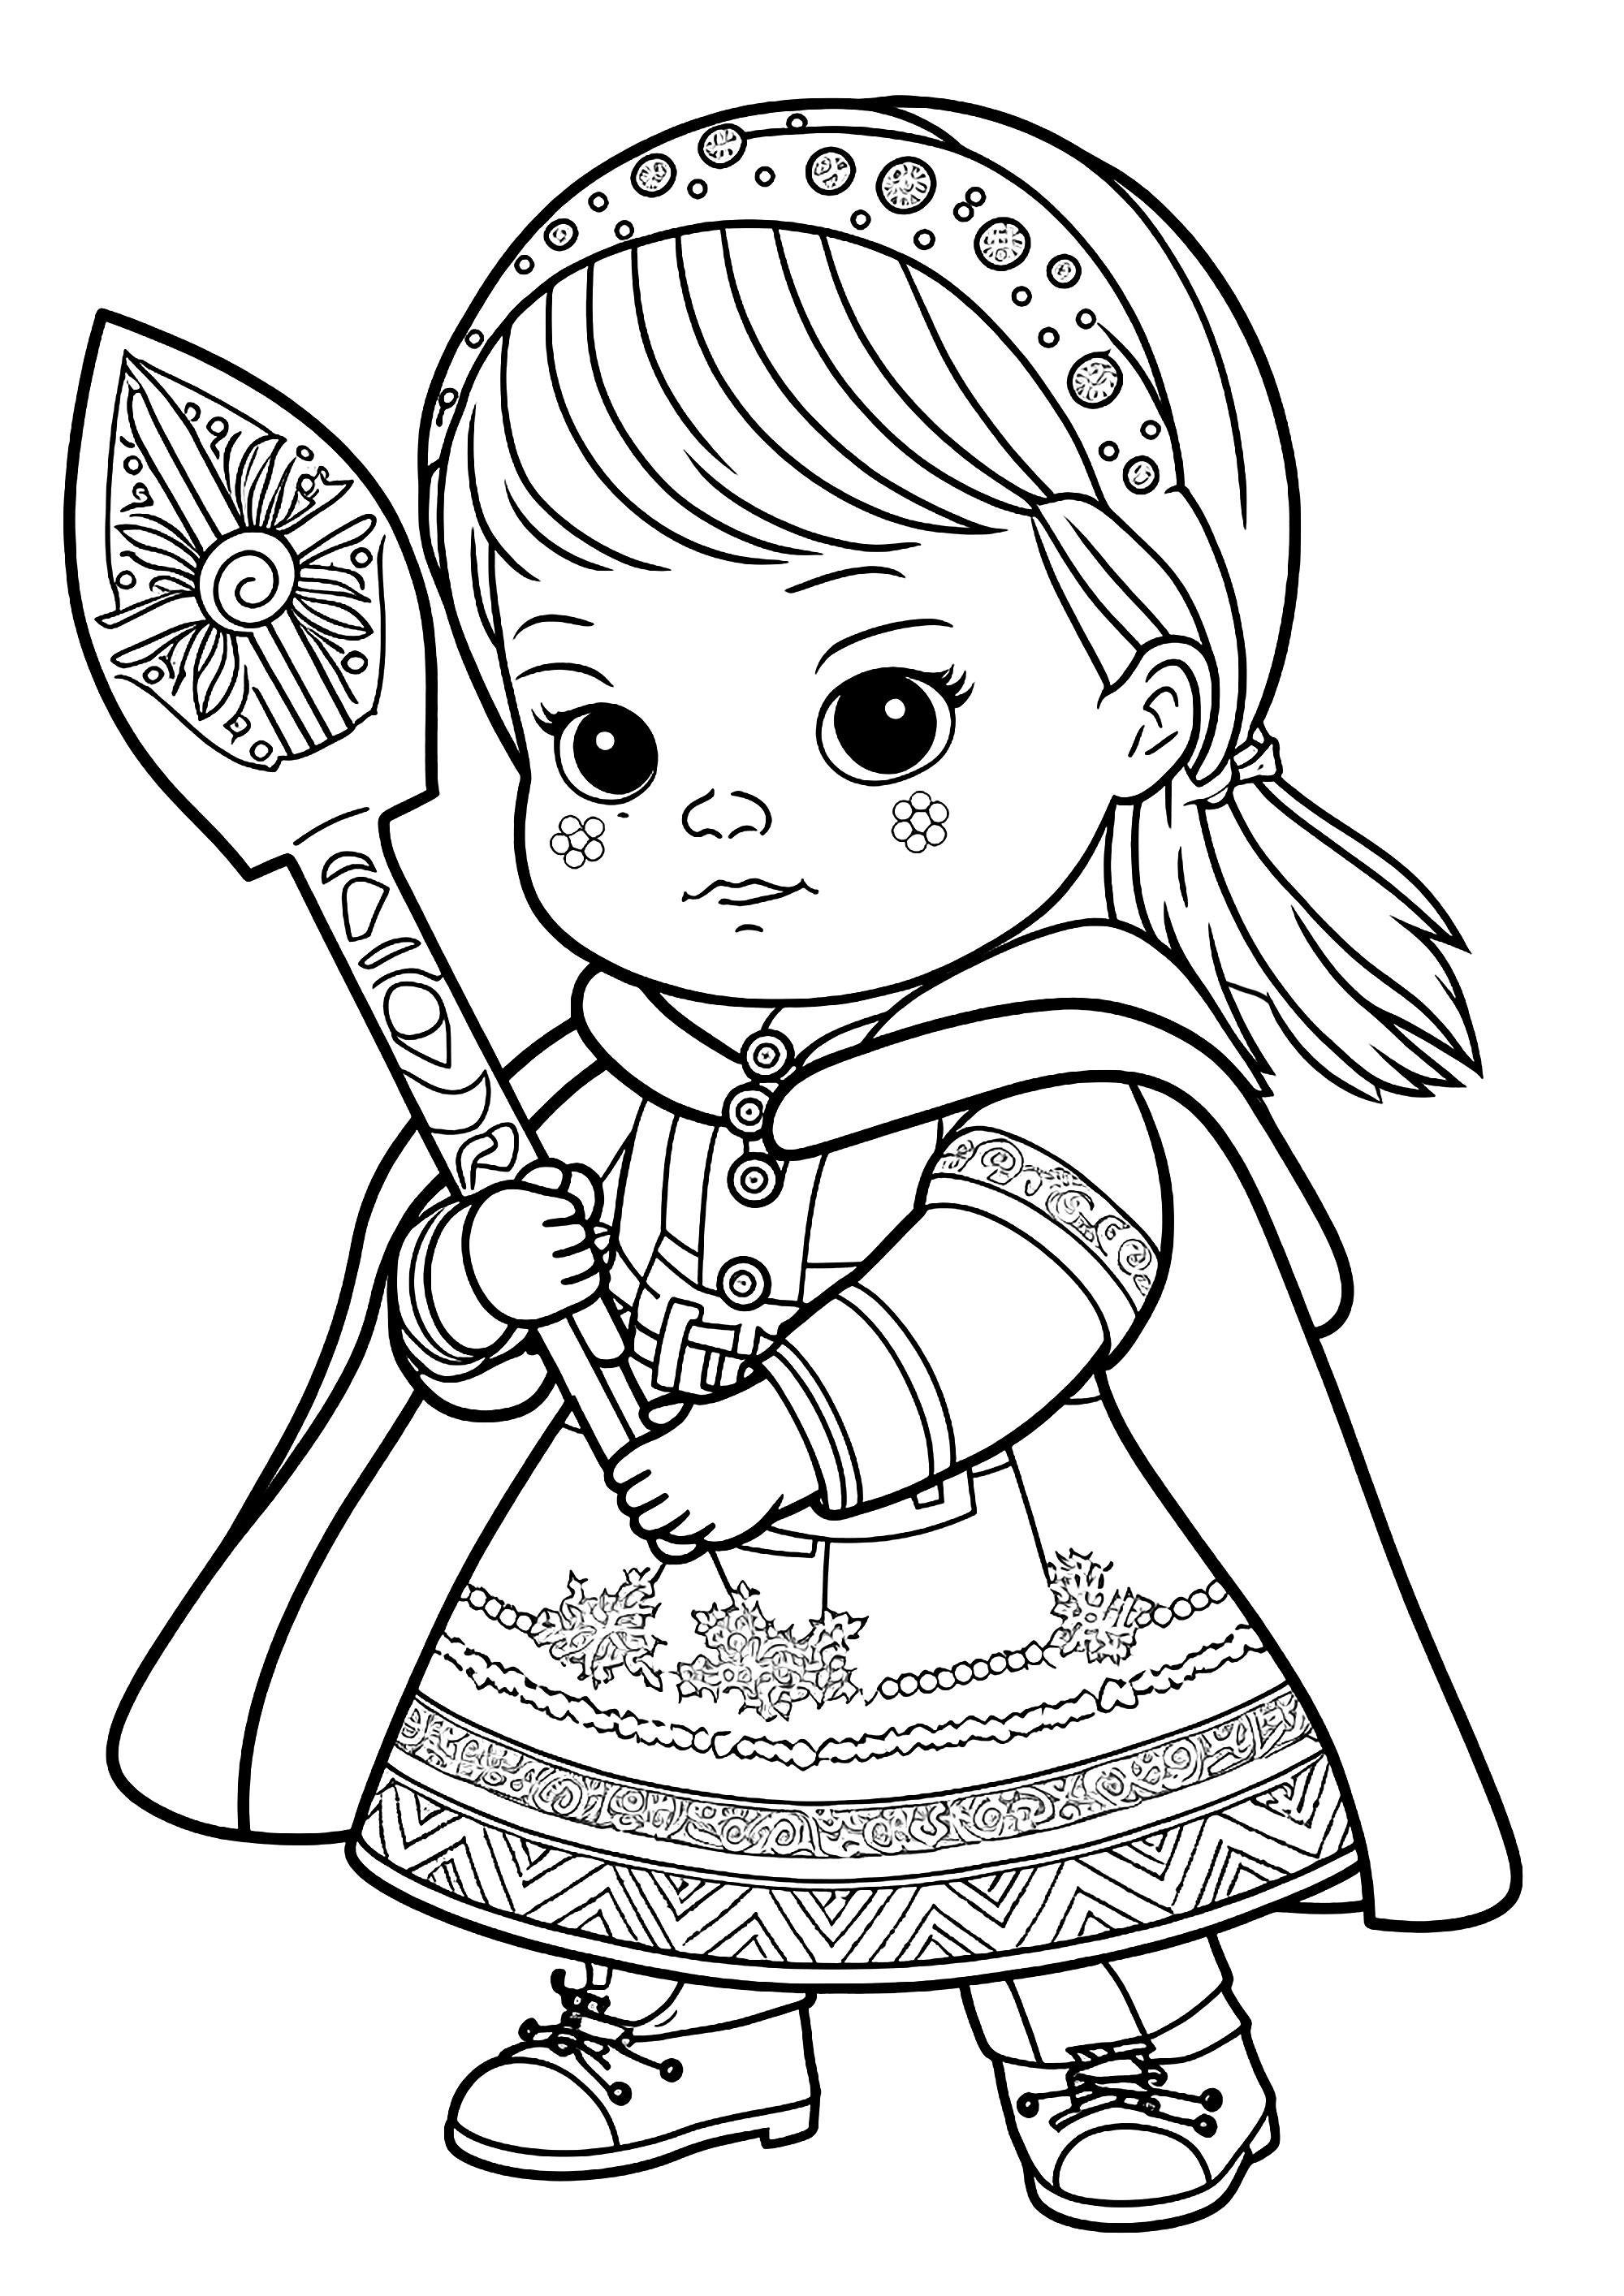 Une petite princesse Viking, qui a l'air très courageuse avec son sceptre joliment décoré. Ce coloriage est parfait pour les enfants qui aiment les aventures et les histoires de princesses. La petite princesse Viking est très courageuse et porte fièrement son sceptre joliment décoré.